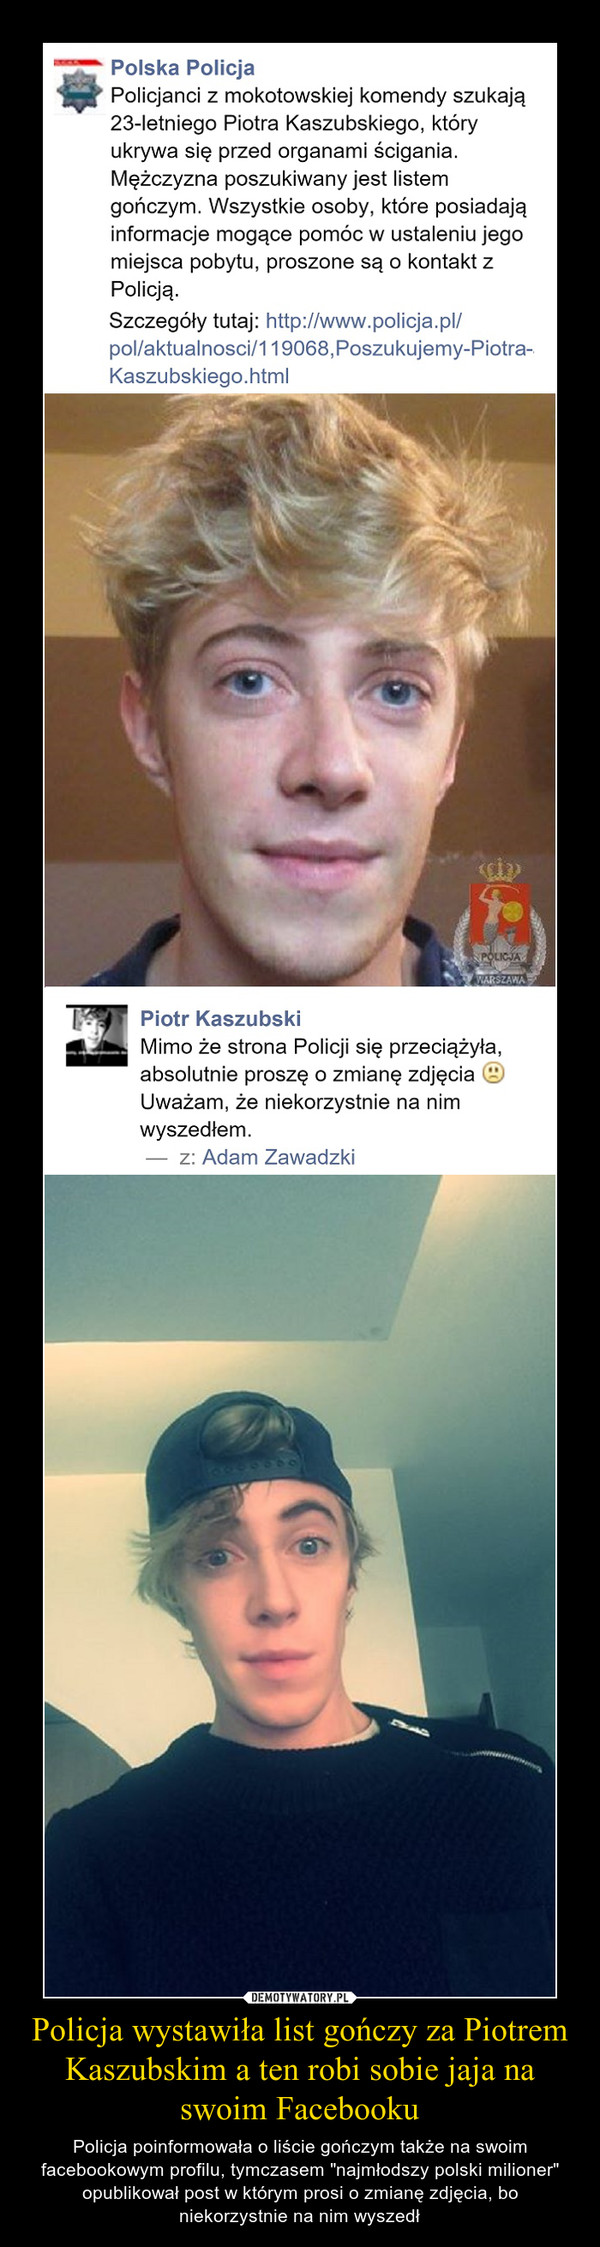 Policja wystawiła list gończy za Piotrem Kaszubskim a ten robi sobie jaja na swoim Facebooku